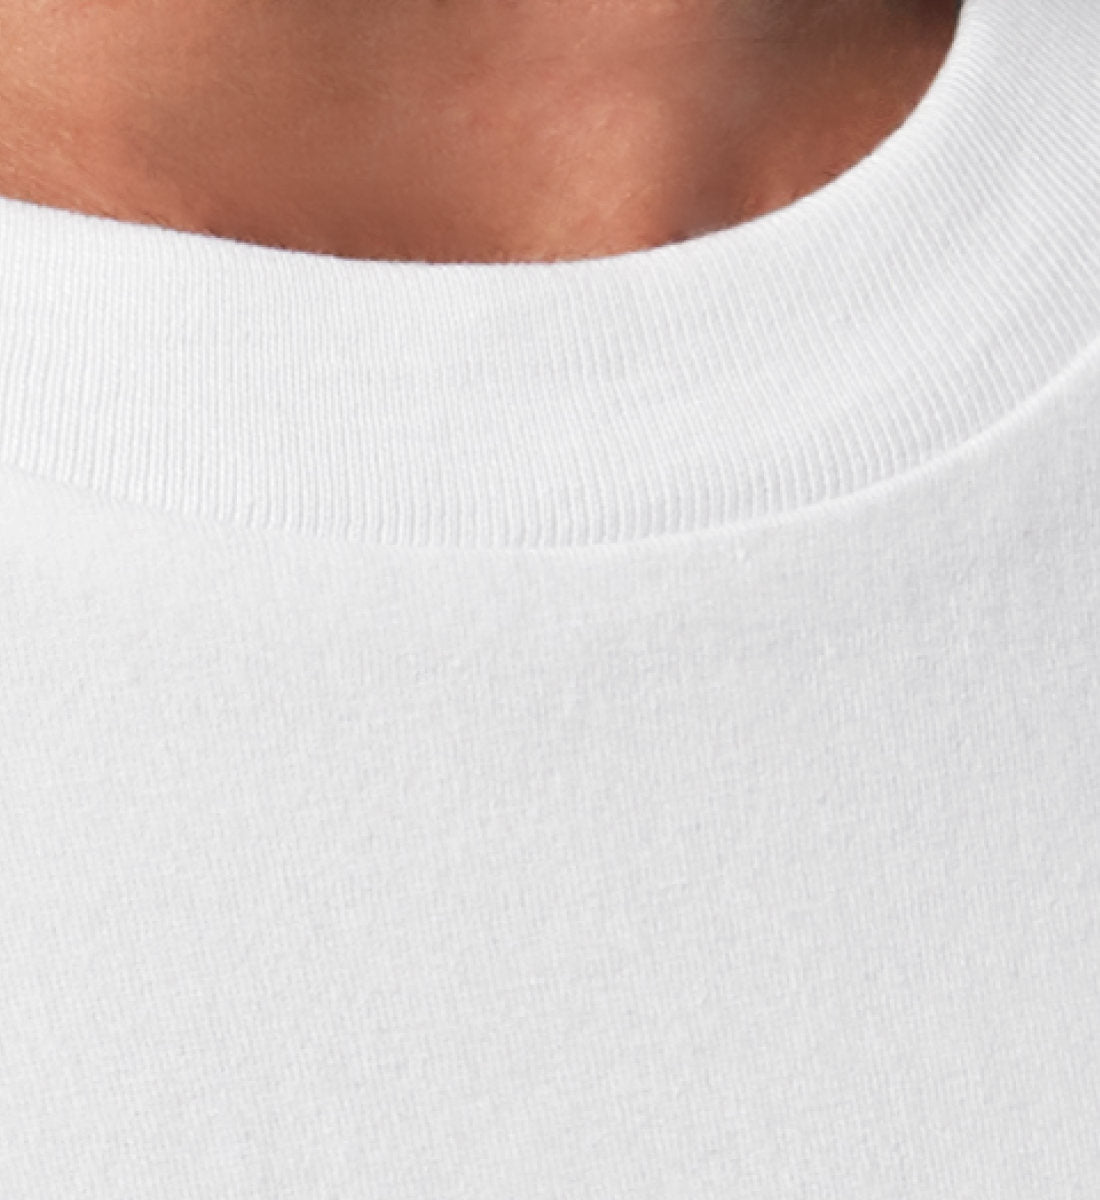 Weißes T-Shirt Unisex Relaxed Fit für Frauen und Männer bedruckt mit dem Design der Roger Rockawoo Kollektion Desperate and displeased